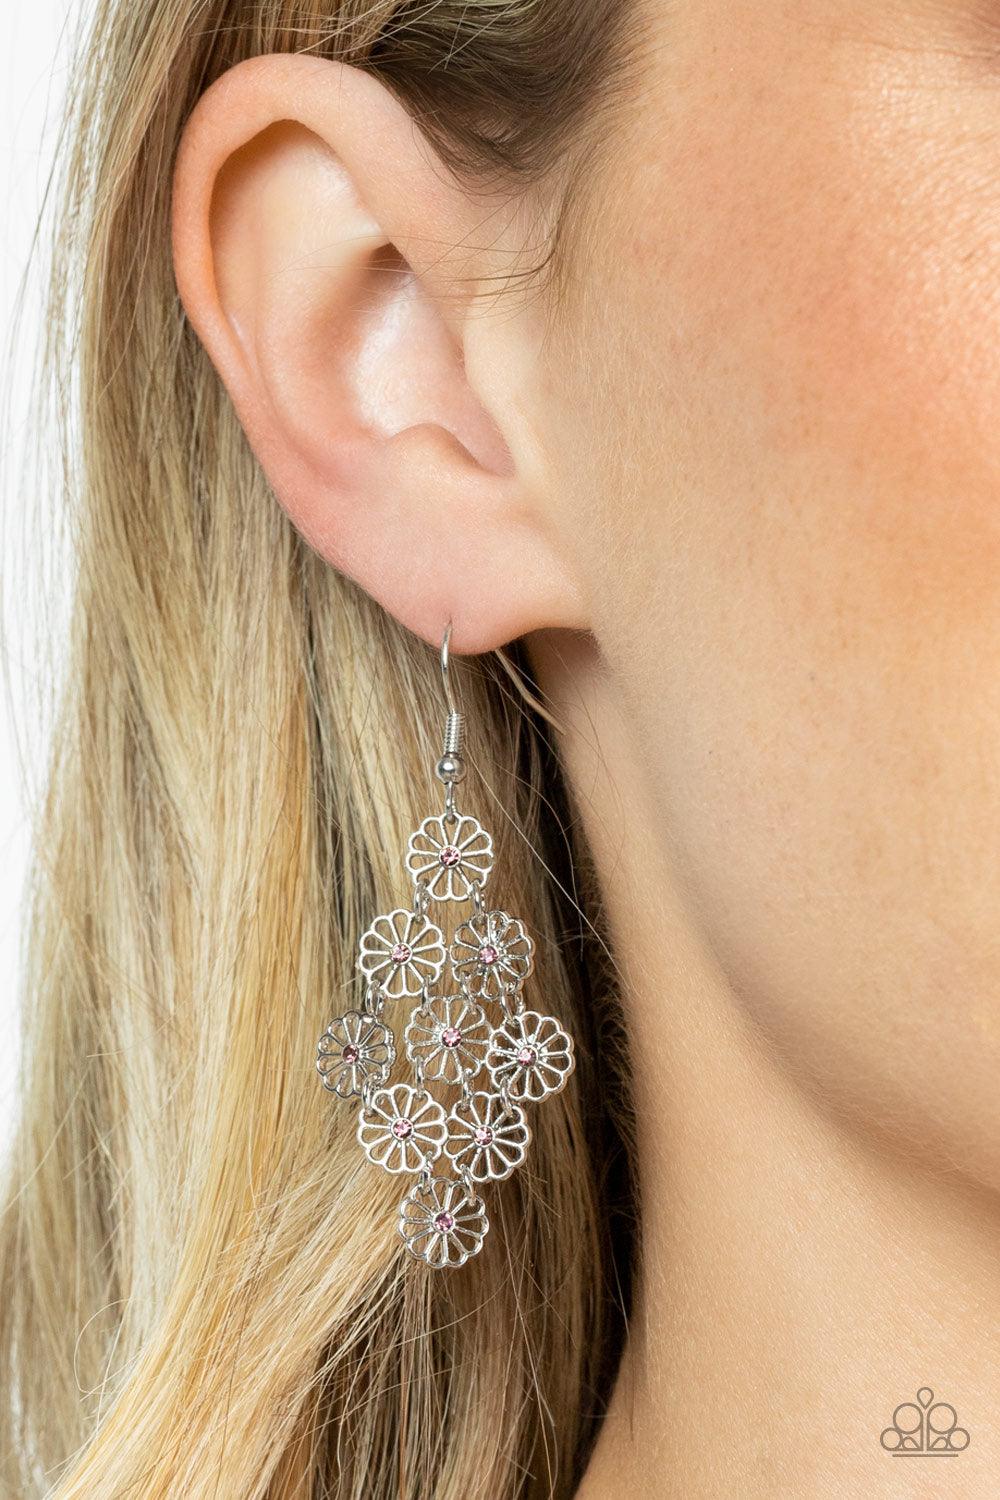 Bustling Blooms Purple Earrings - Jewelry by Bretta - Jewelry by Bretta